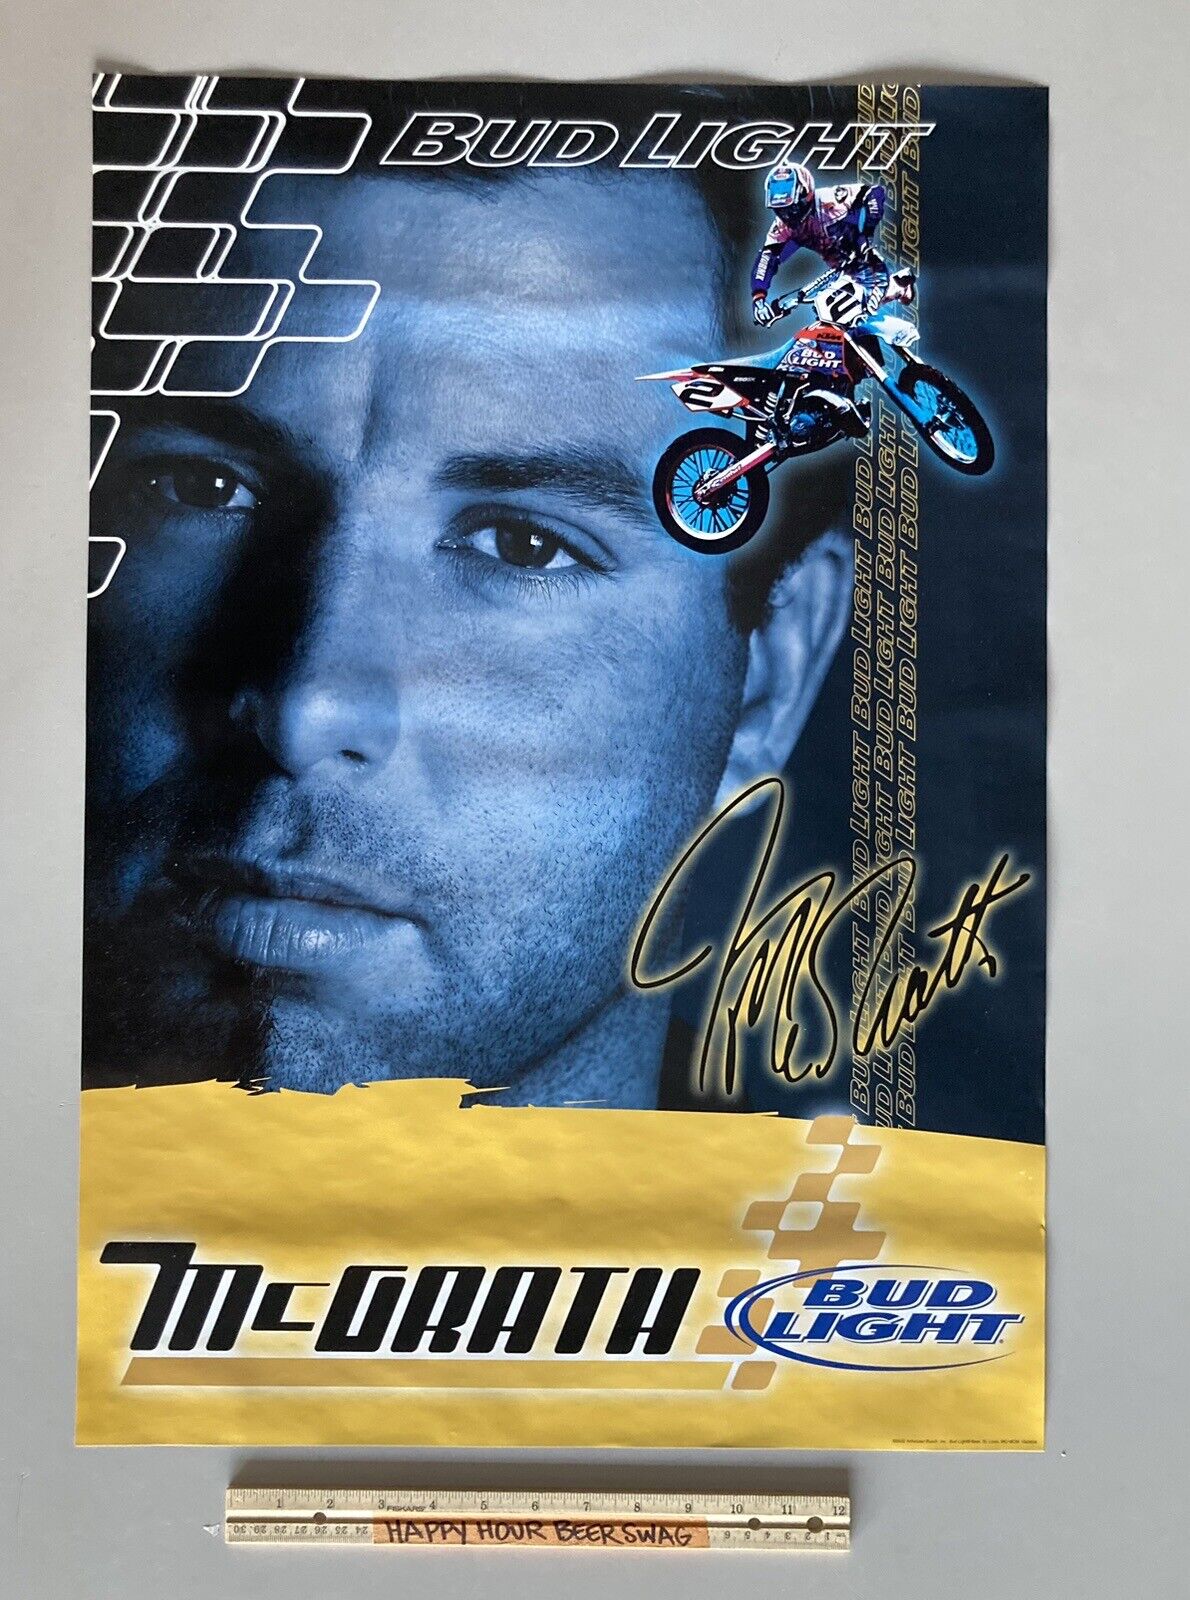 ✅ NOS Vintage 2002 Jeremy McGrath Motorcycle Bud Light Beer Poster Dirt Bike